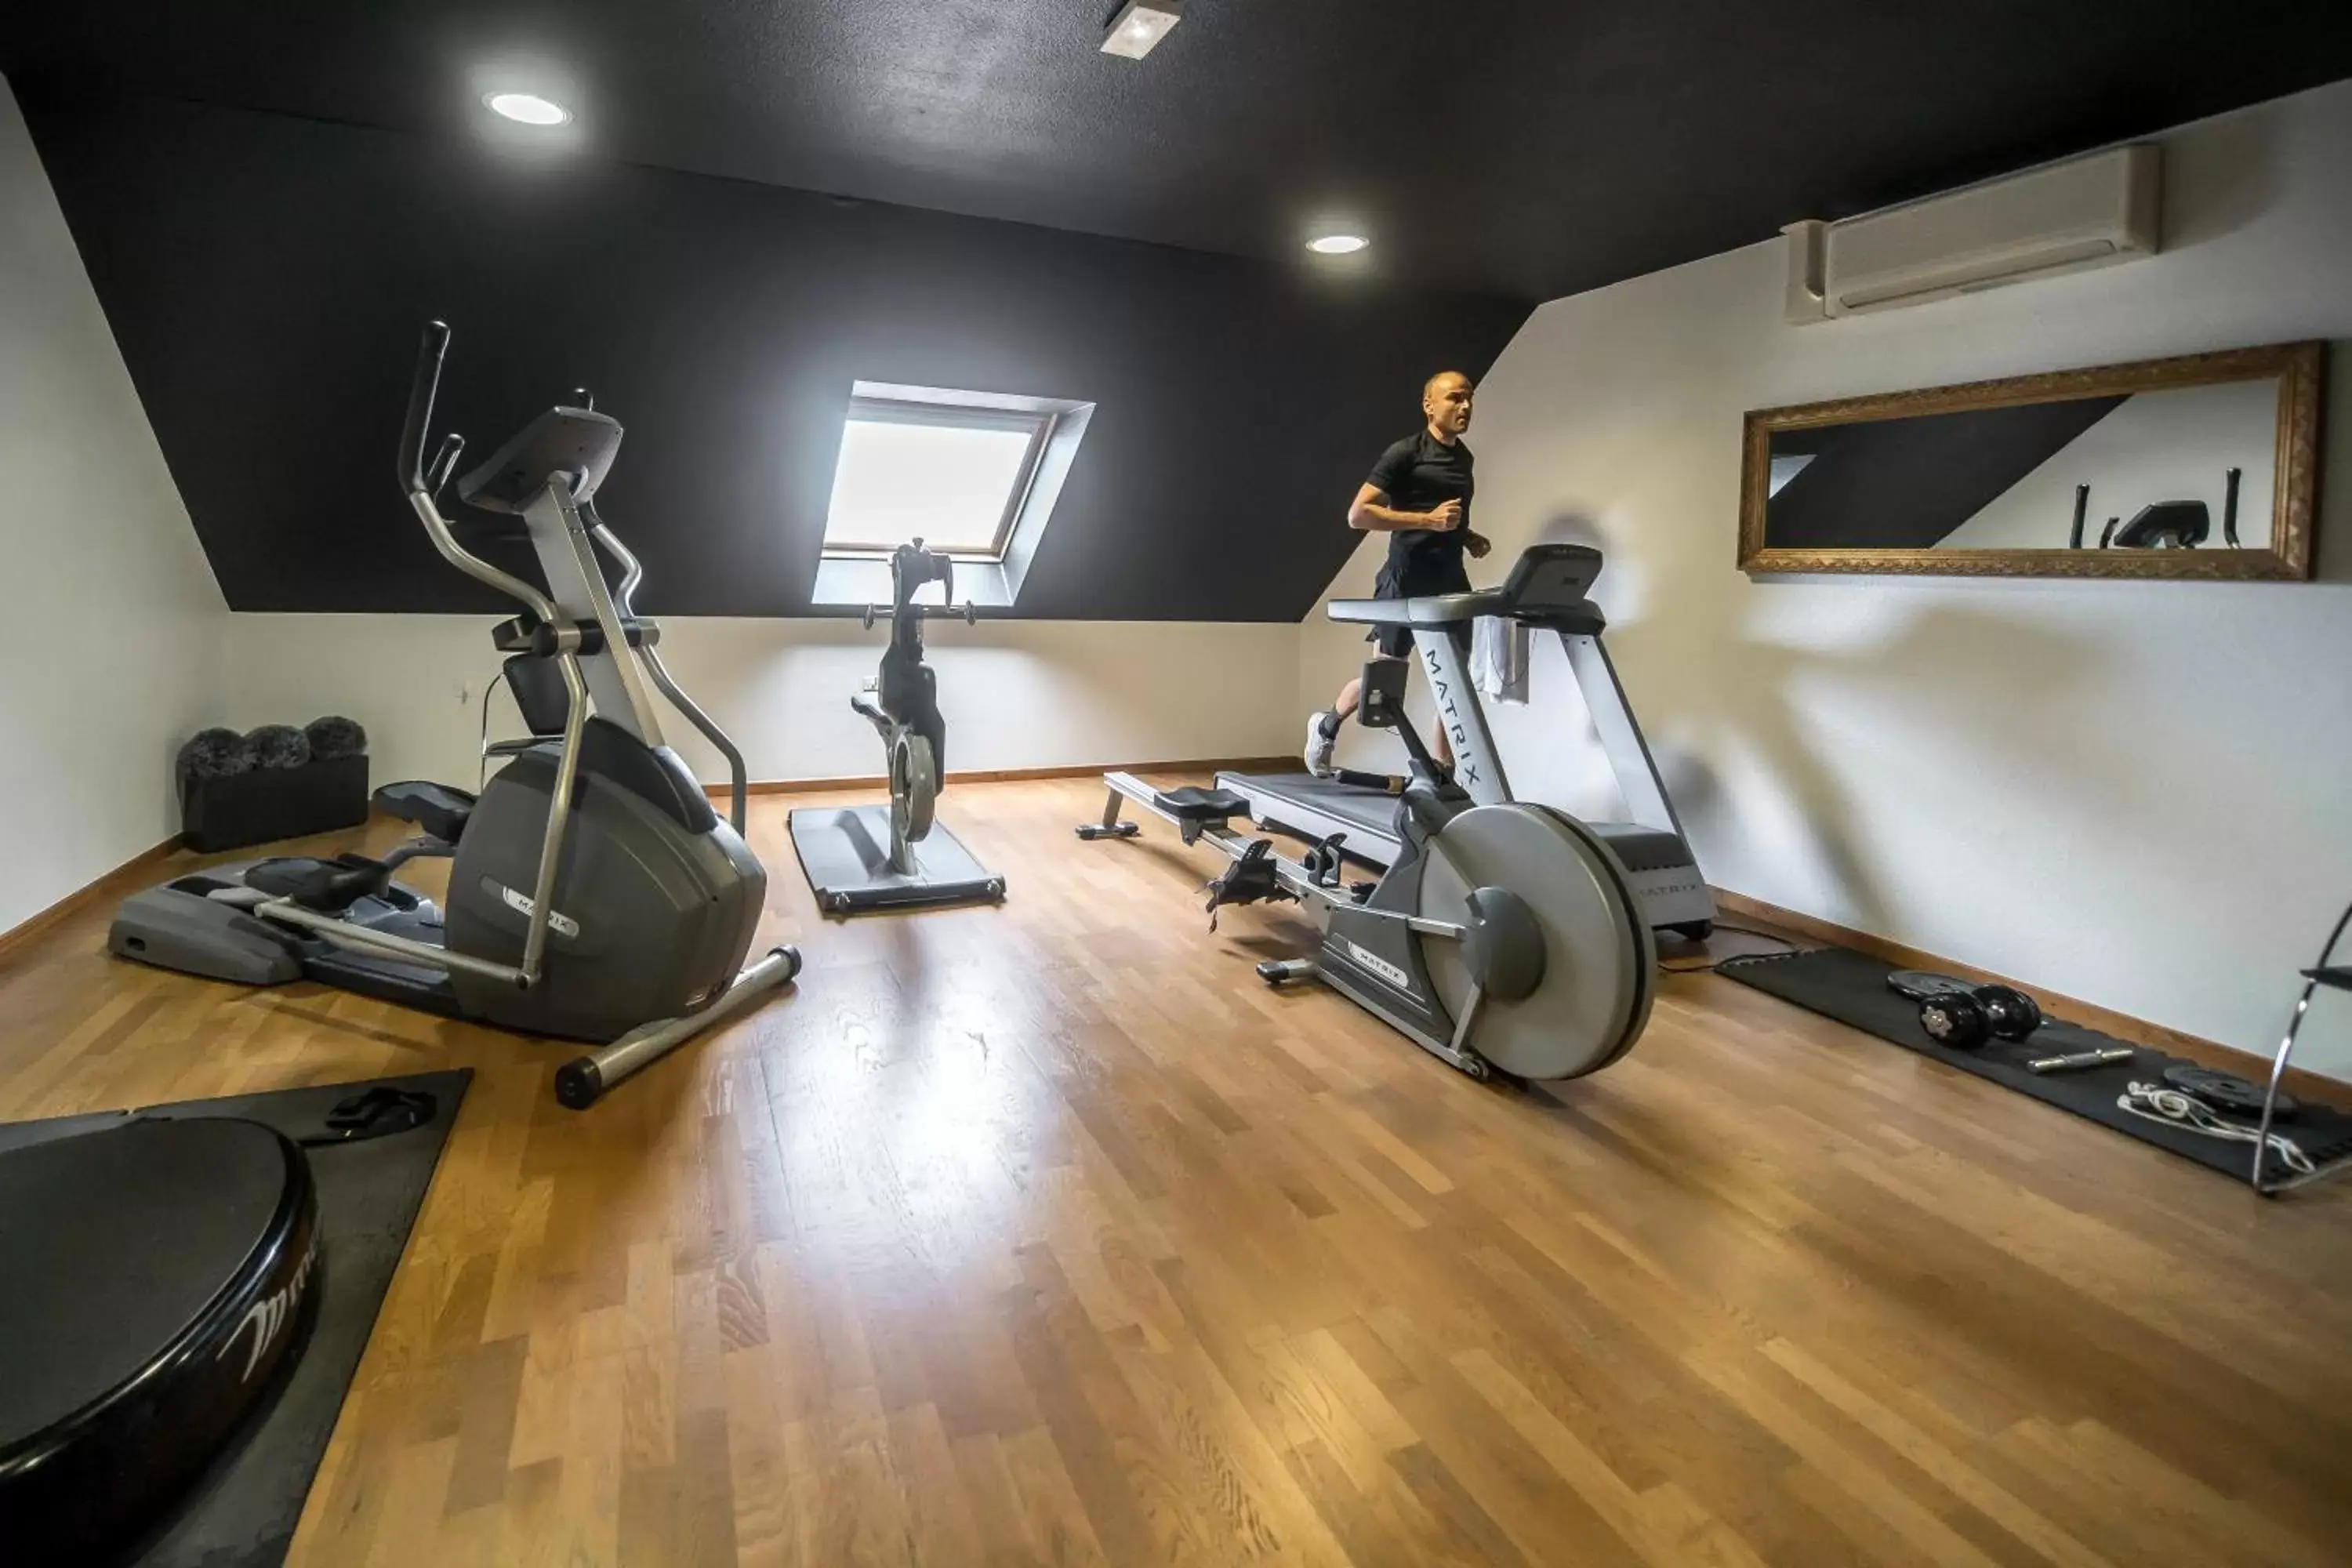 Fitness centre/facilities, Fitness Center/Facilities in Mercure Bords de Loire Saumur